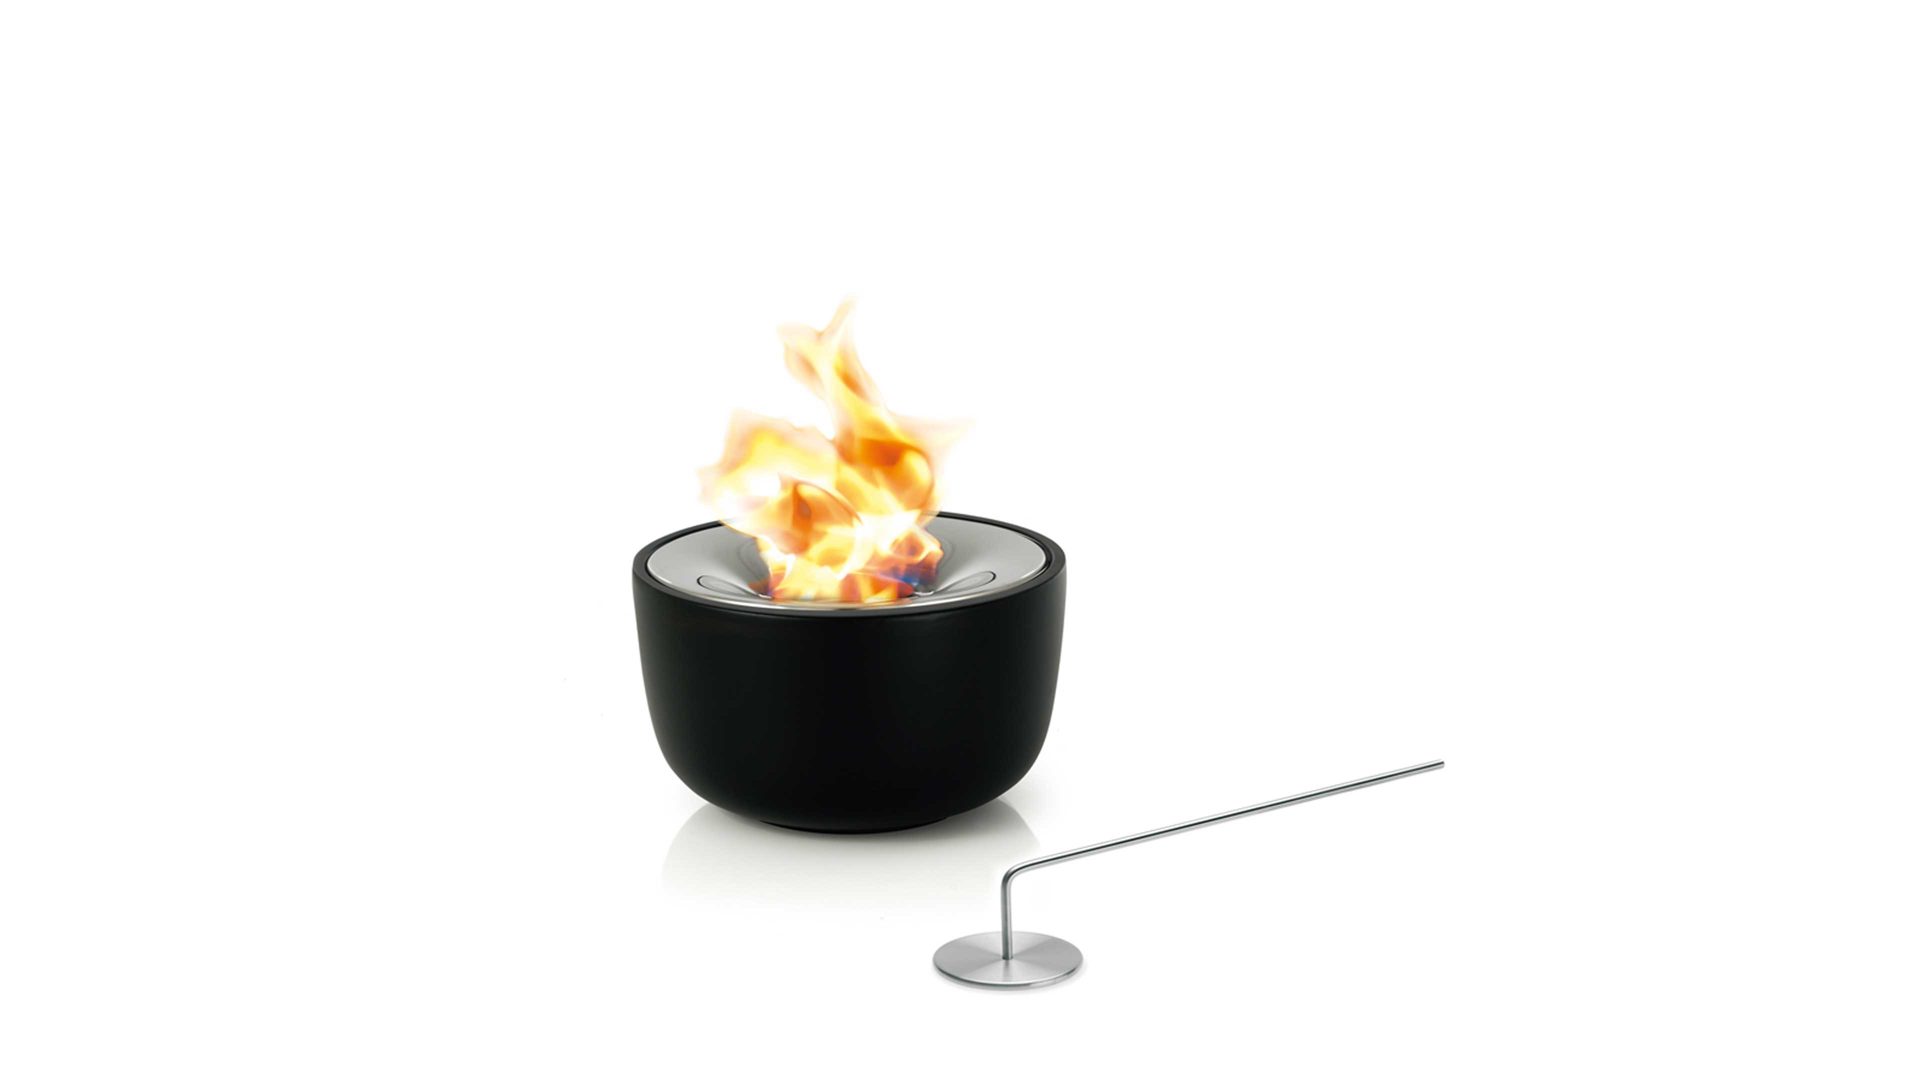 Feuerkorb Blomus aus Keramik in Schwarz blomus Gel-Feuerstelle Fuoco schwarze Keramik & polierter Edelstahl – Durchmesser ca. 19 cm